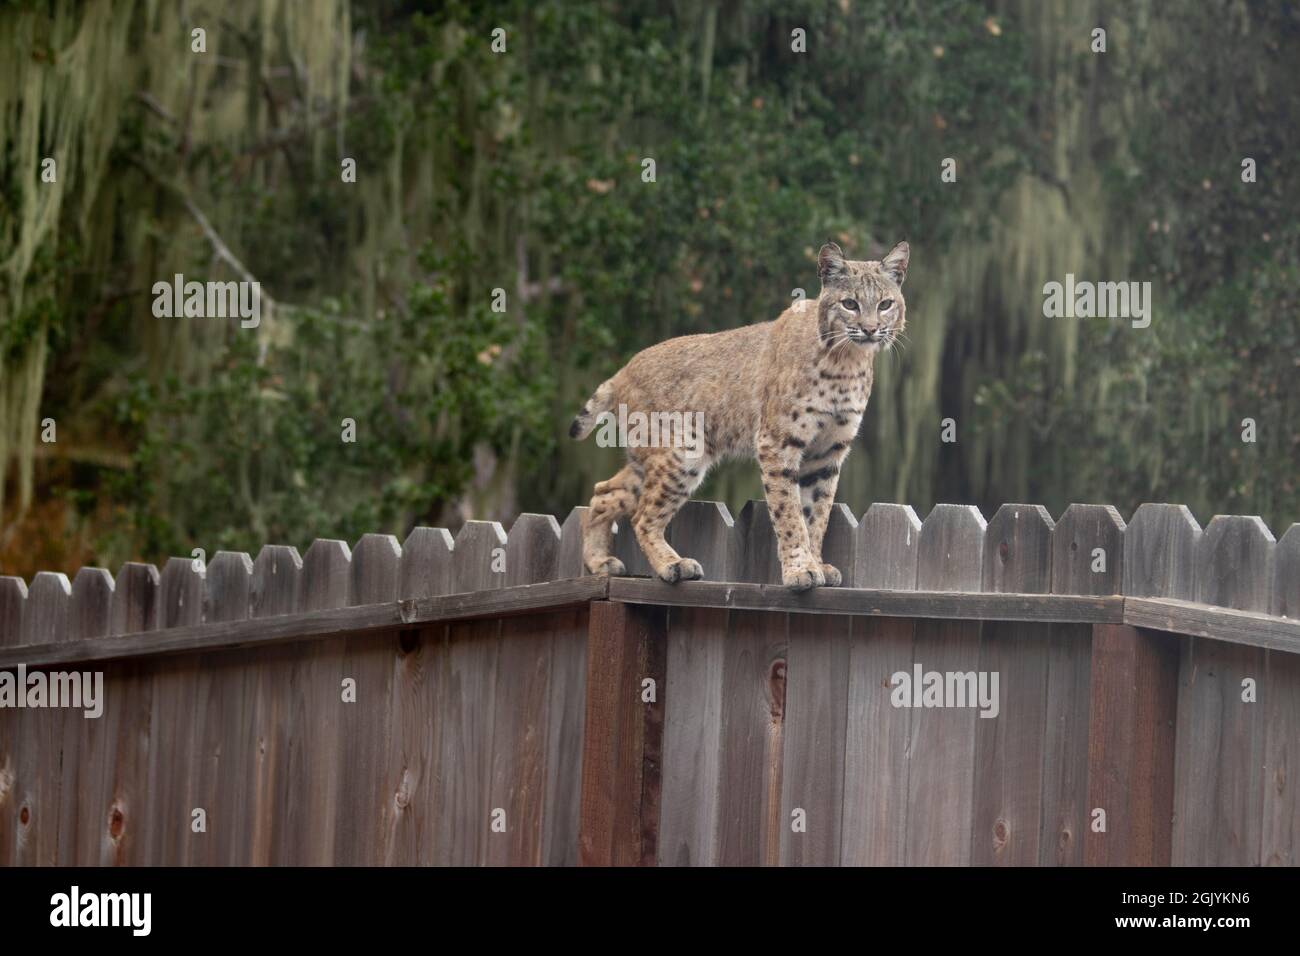 Bobcat on a fence Stock Photo